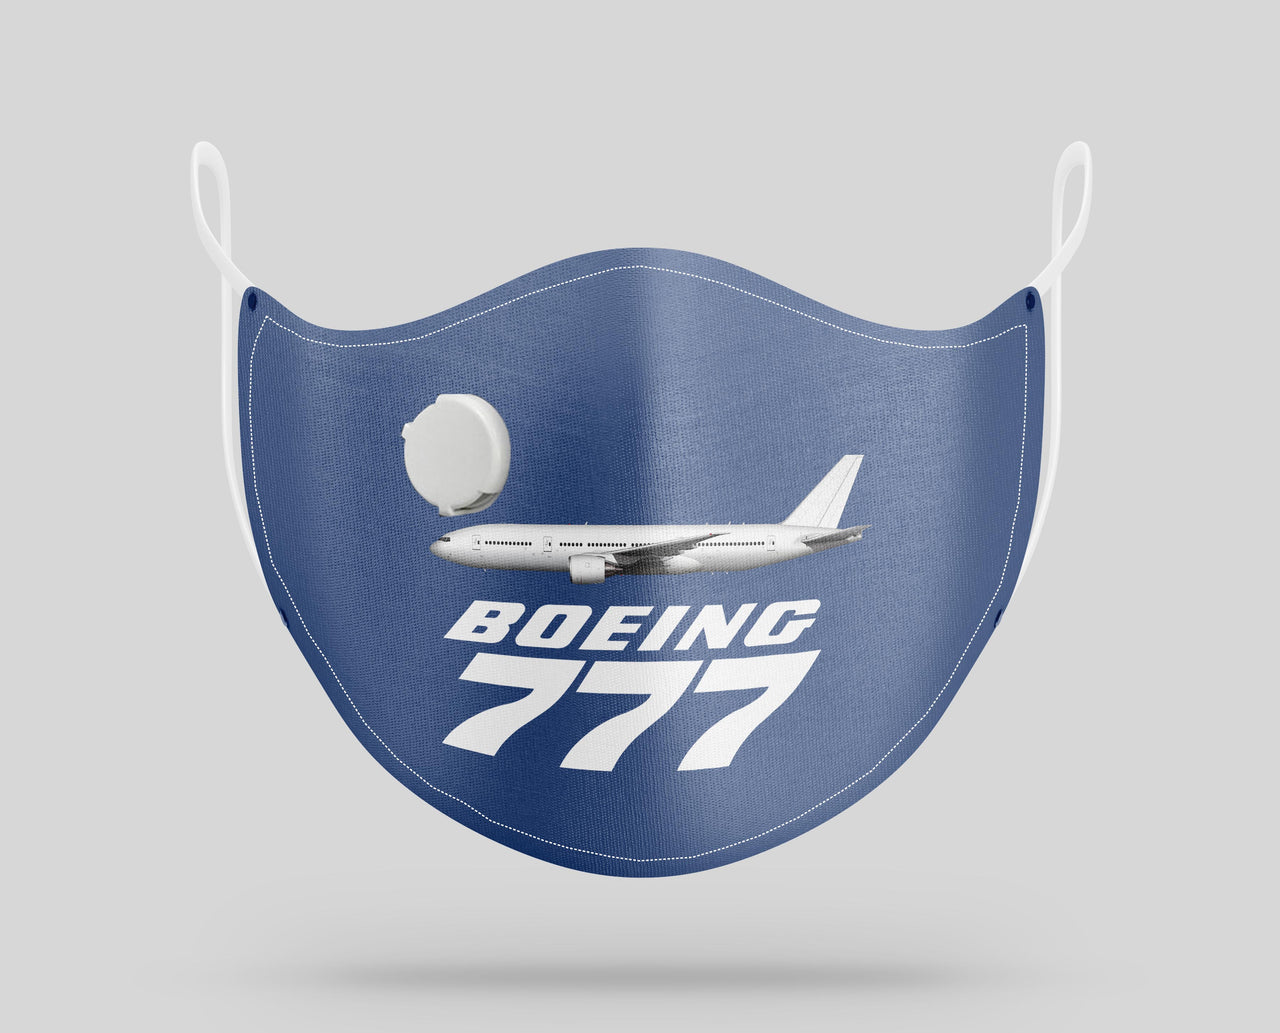 The Boeing 777 Designed Face Masks